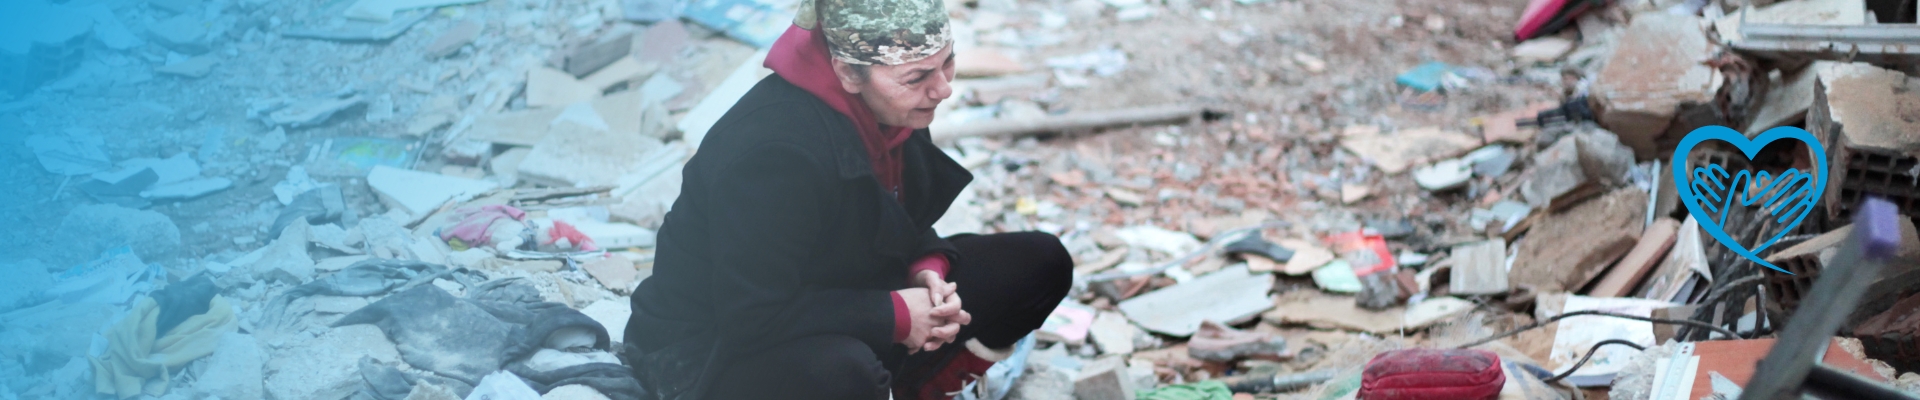 Spenden Sie jetzt für UN Women Nothilfe in Türkei und Syrien. Frau schaut verzweifelt zu den Trümmern eines Wohnhauses. Credit: UN Women/Özge Ergin